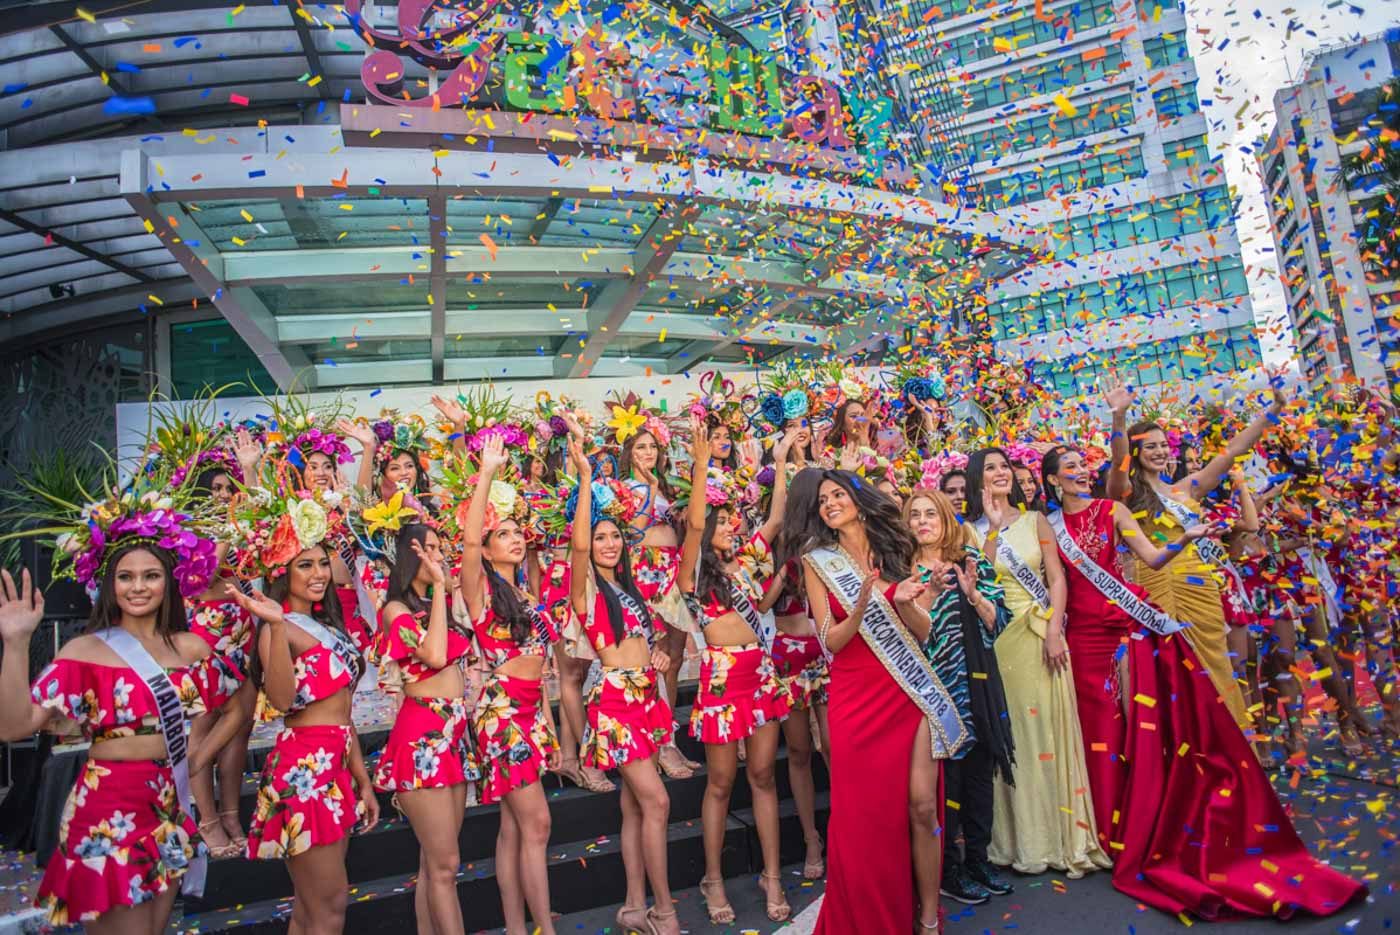 IN PHOTOS: Bb Pilipinas 2019 Parade of Beauties